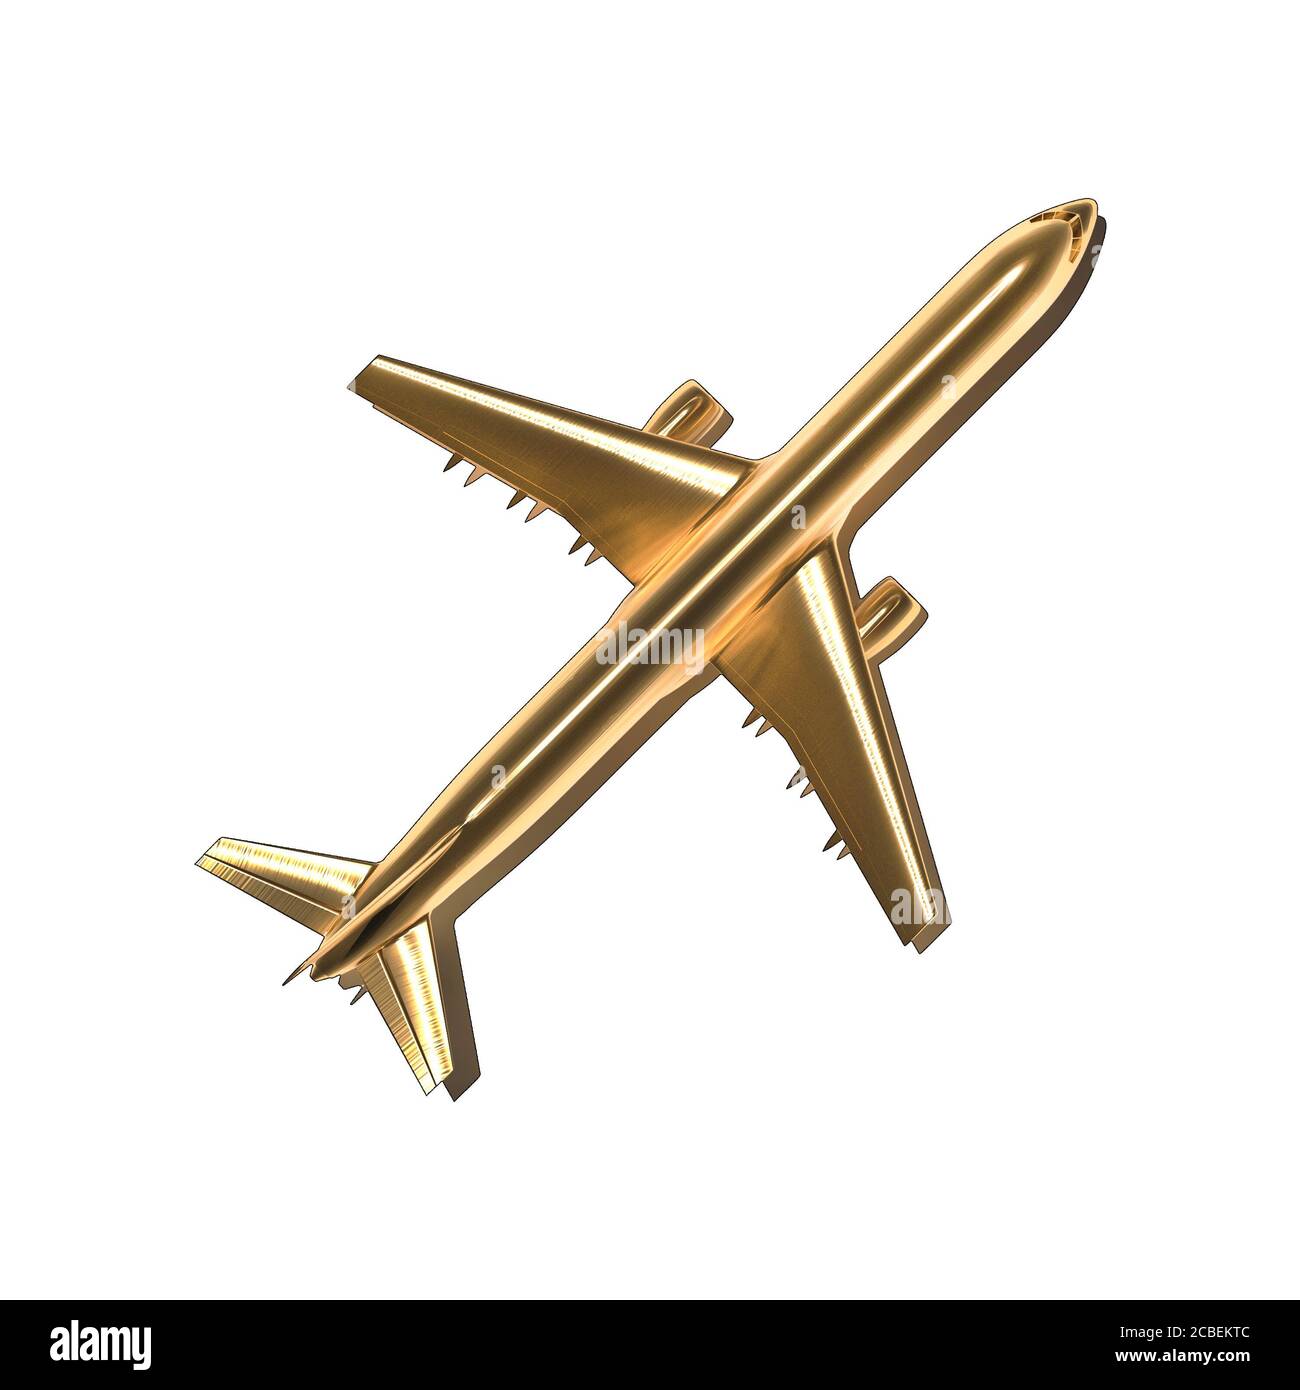 golden Flugzeug Flugzeuge isoliert auf weißem Hintergrund - Reisen und Flugbuchungskonzept - 3d-Illustration Stockfoto